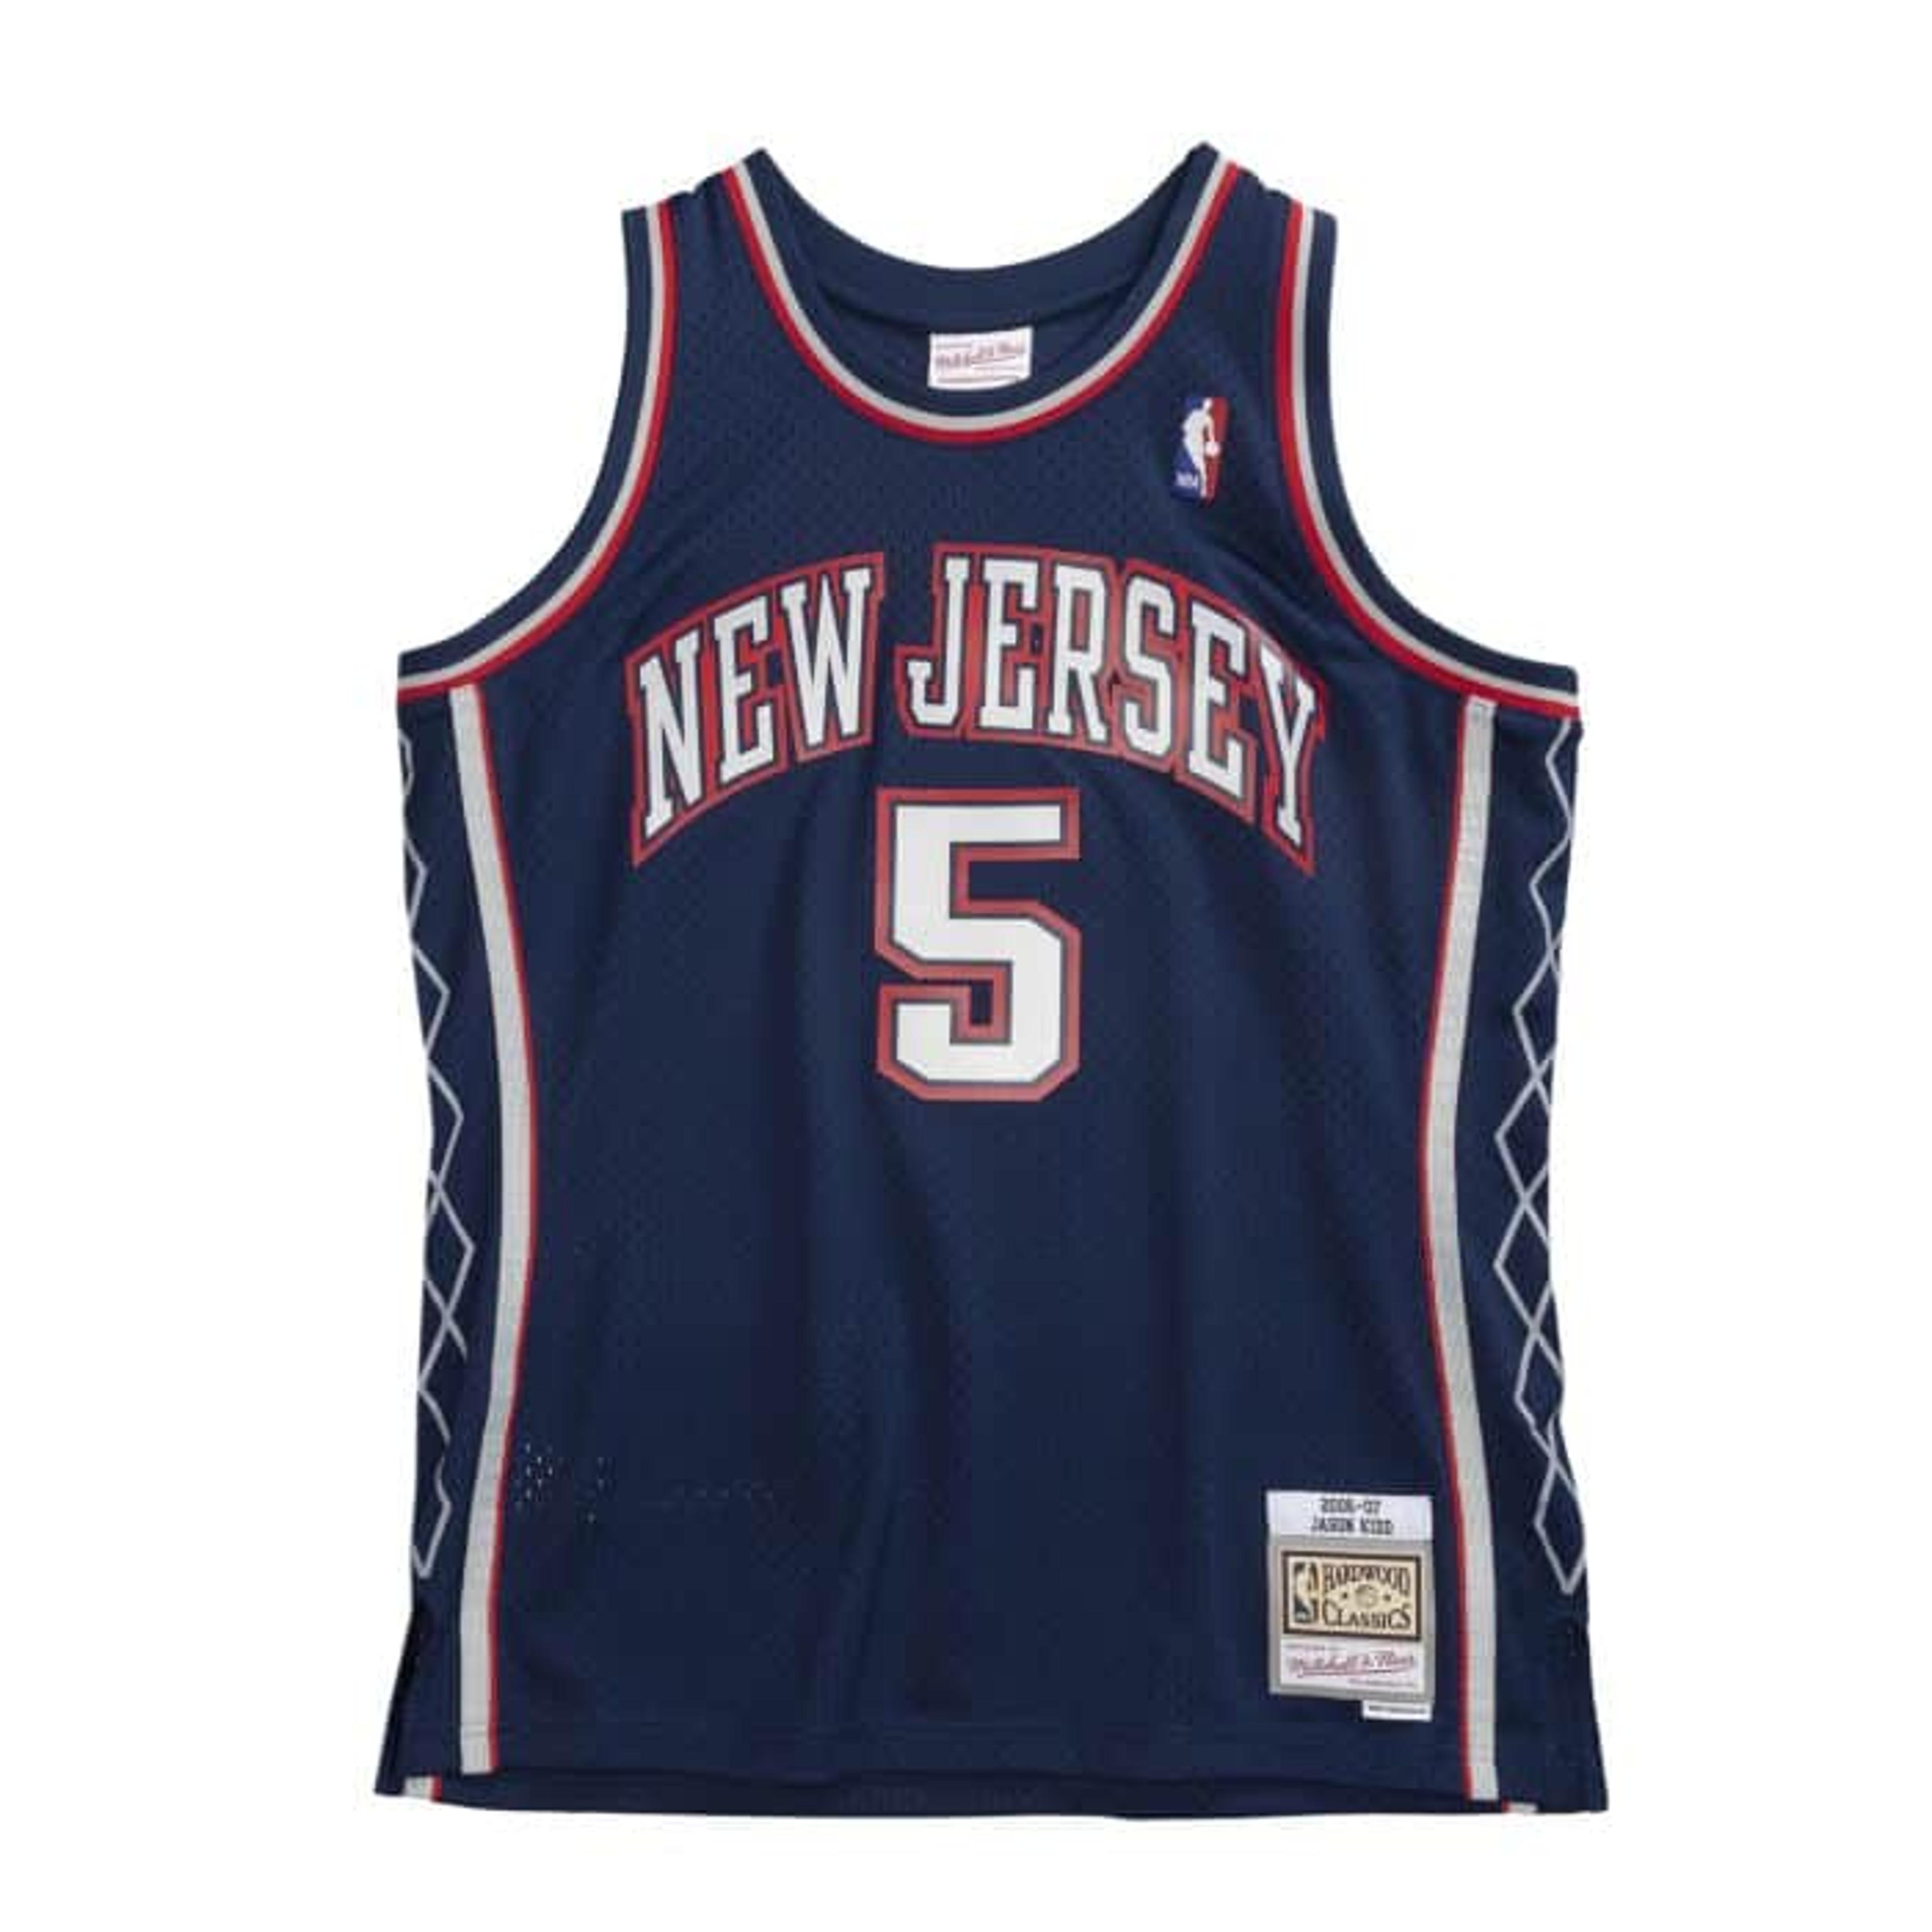 Mitchell & Ness: Hardwood Classic New Jersey Nets Jersey (Jason 